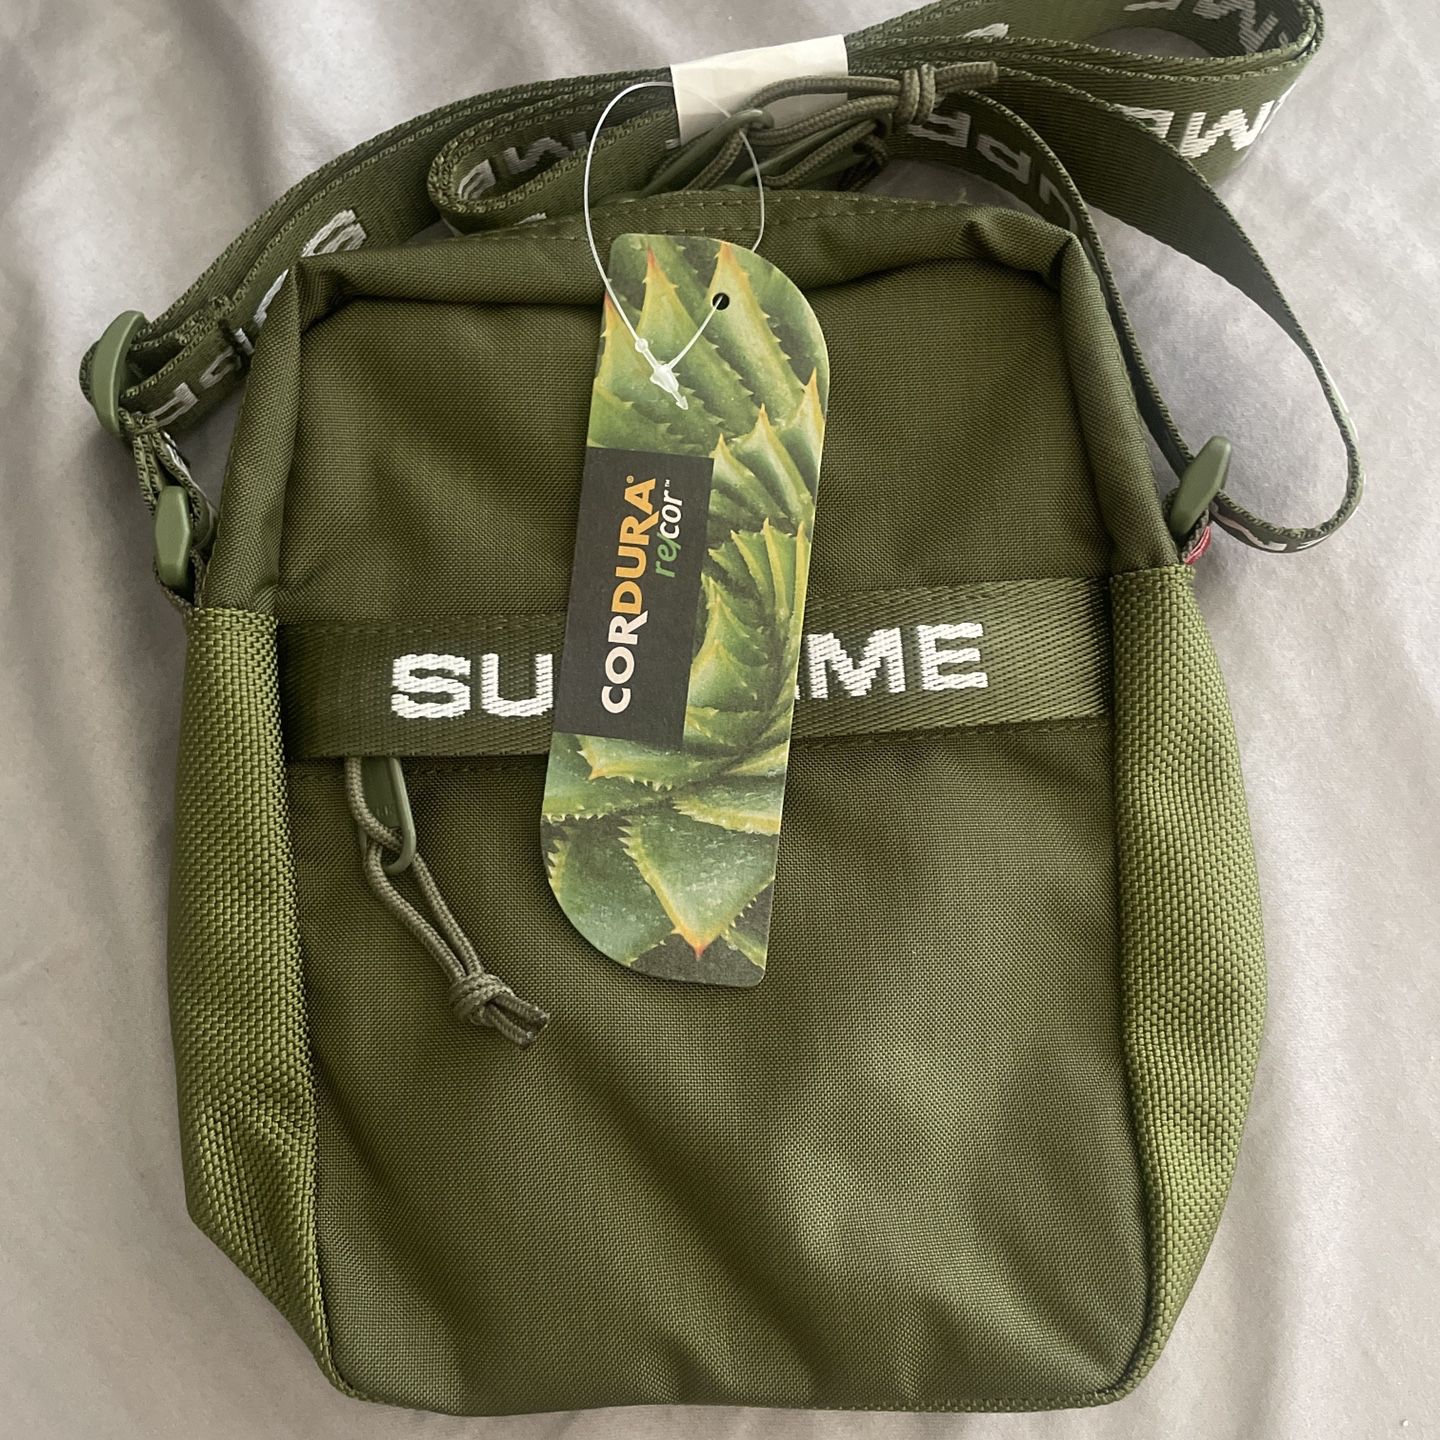 5.11 Tactical LV10 2.0 Sling Pack - Backpack / Shoulder Bag for Sale in San  Diego, CA - OfferUp